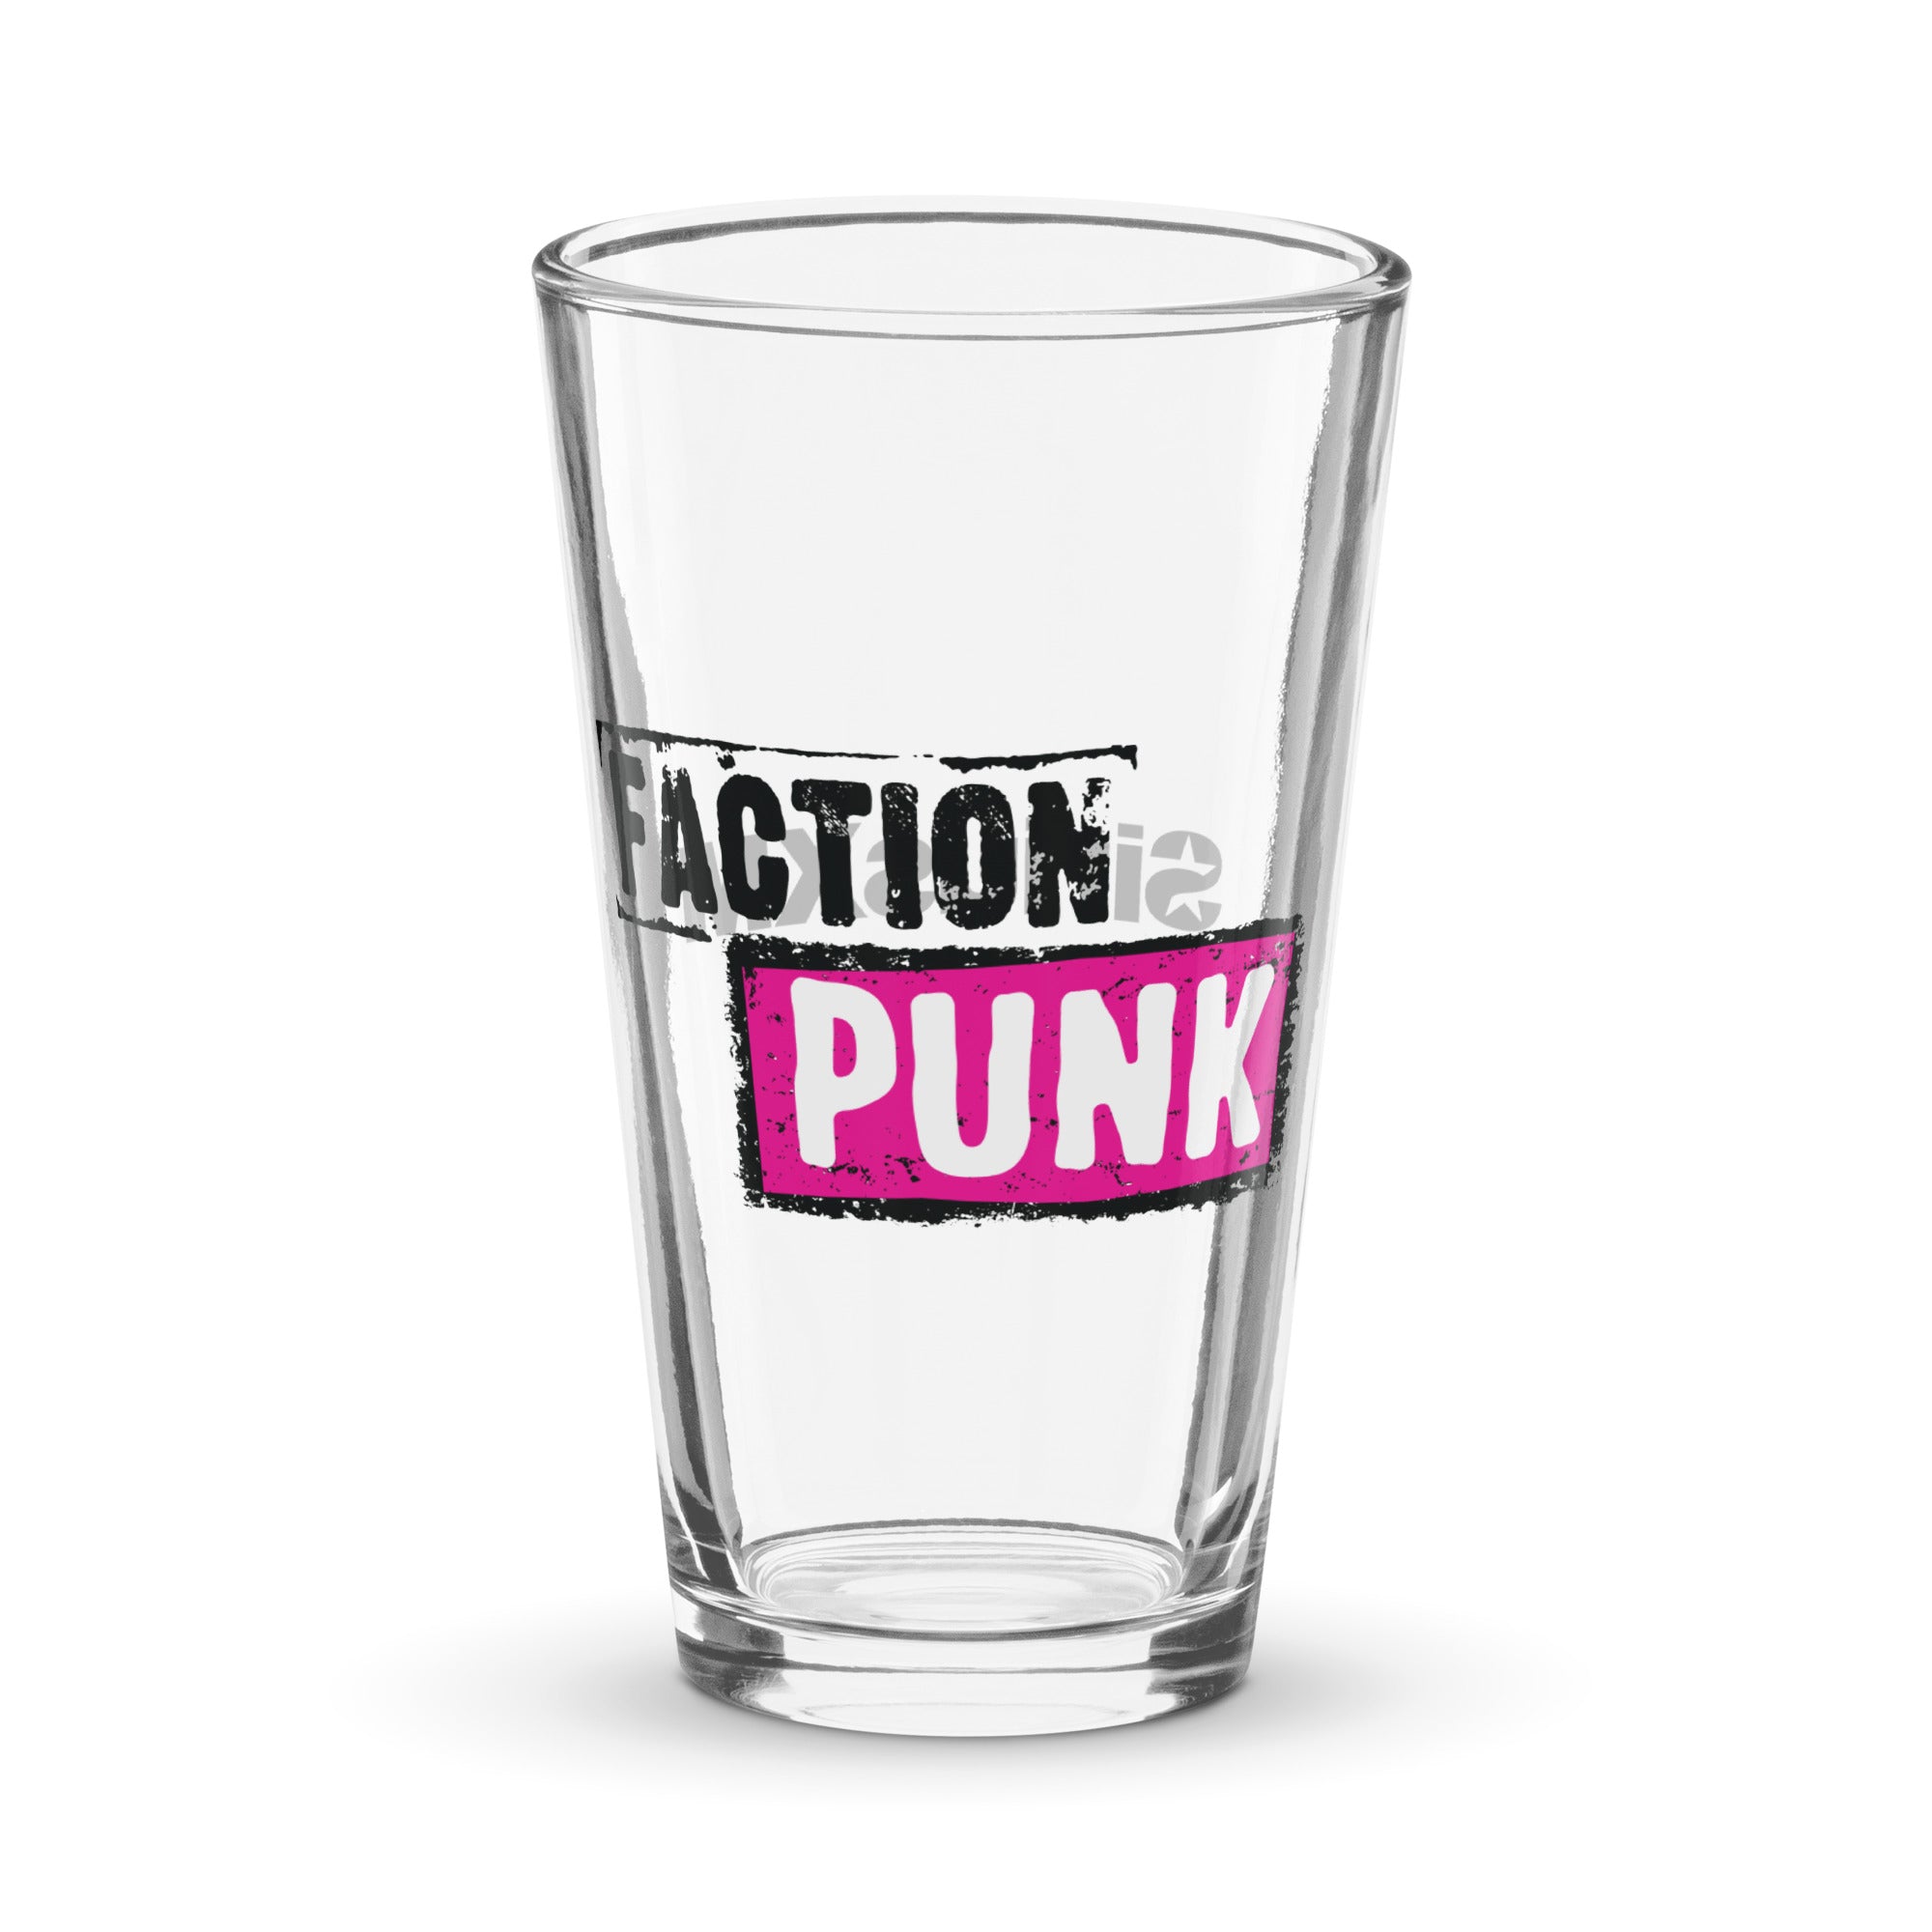 Faction Punk: Pint Glass